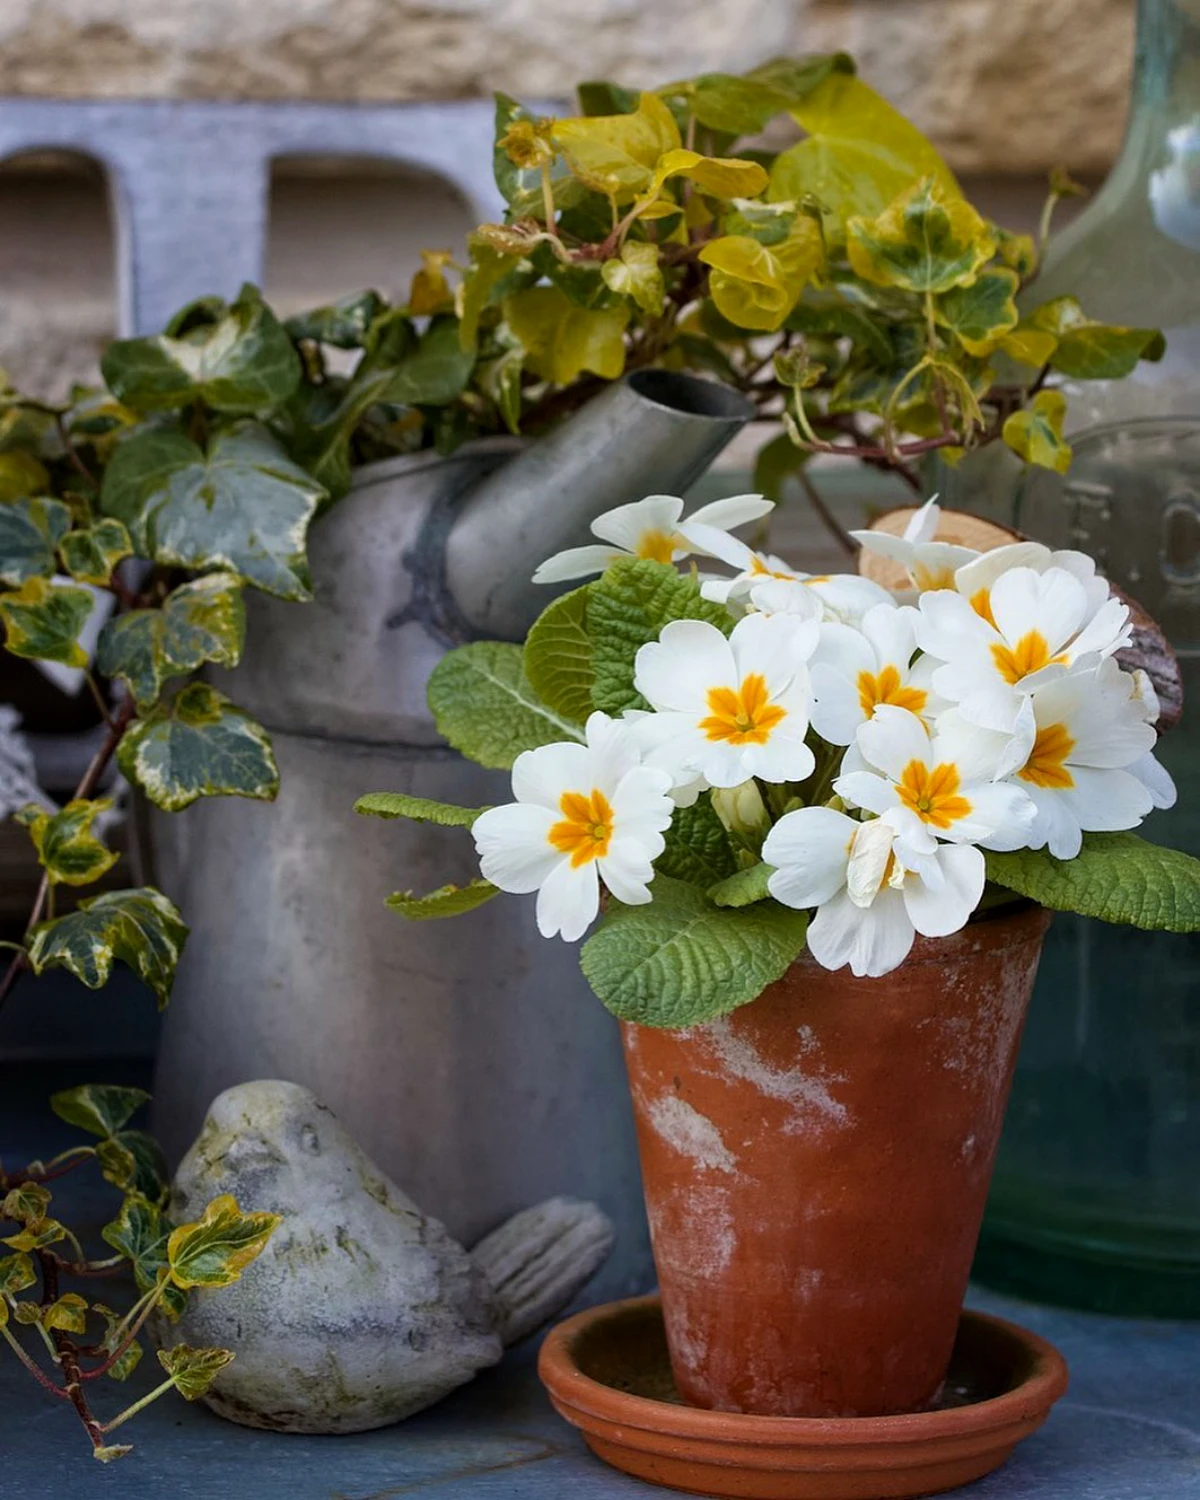 primavere blanches dans un pot decoration jardiniere